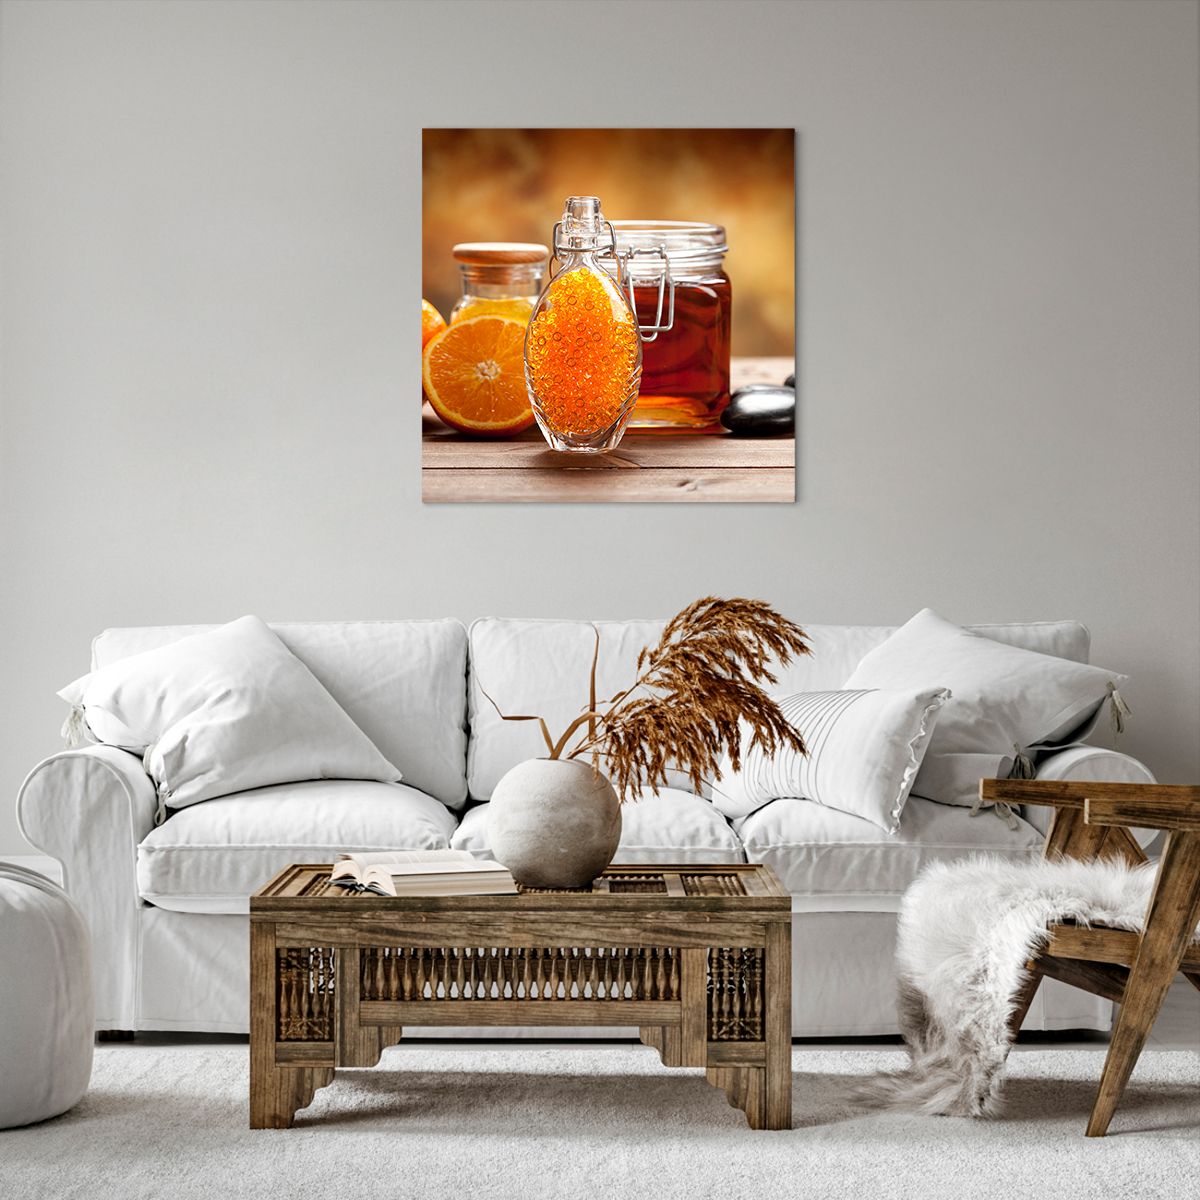 Bild auf Leinwand Gastronomie, Bild auf Leinwand Orange, Bild auf Leinwand Glas Mit Honig, Bild auf Leinwand Steine, Bild auf Leinwand Orangen